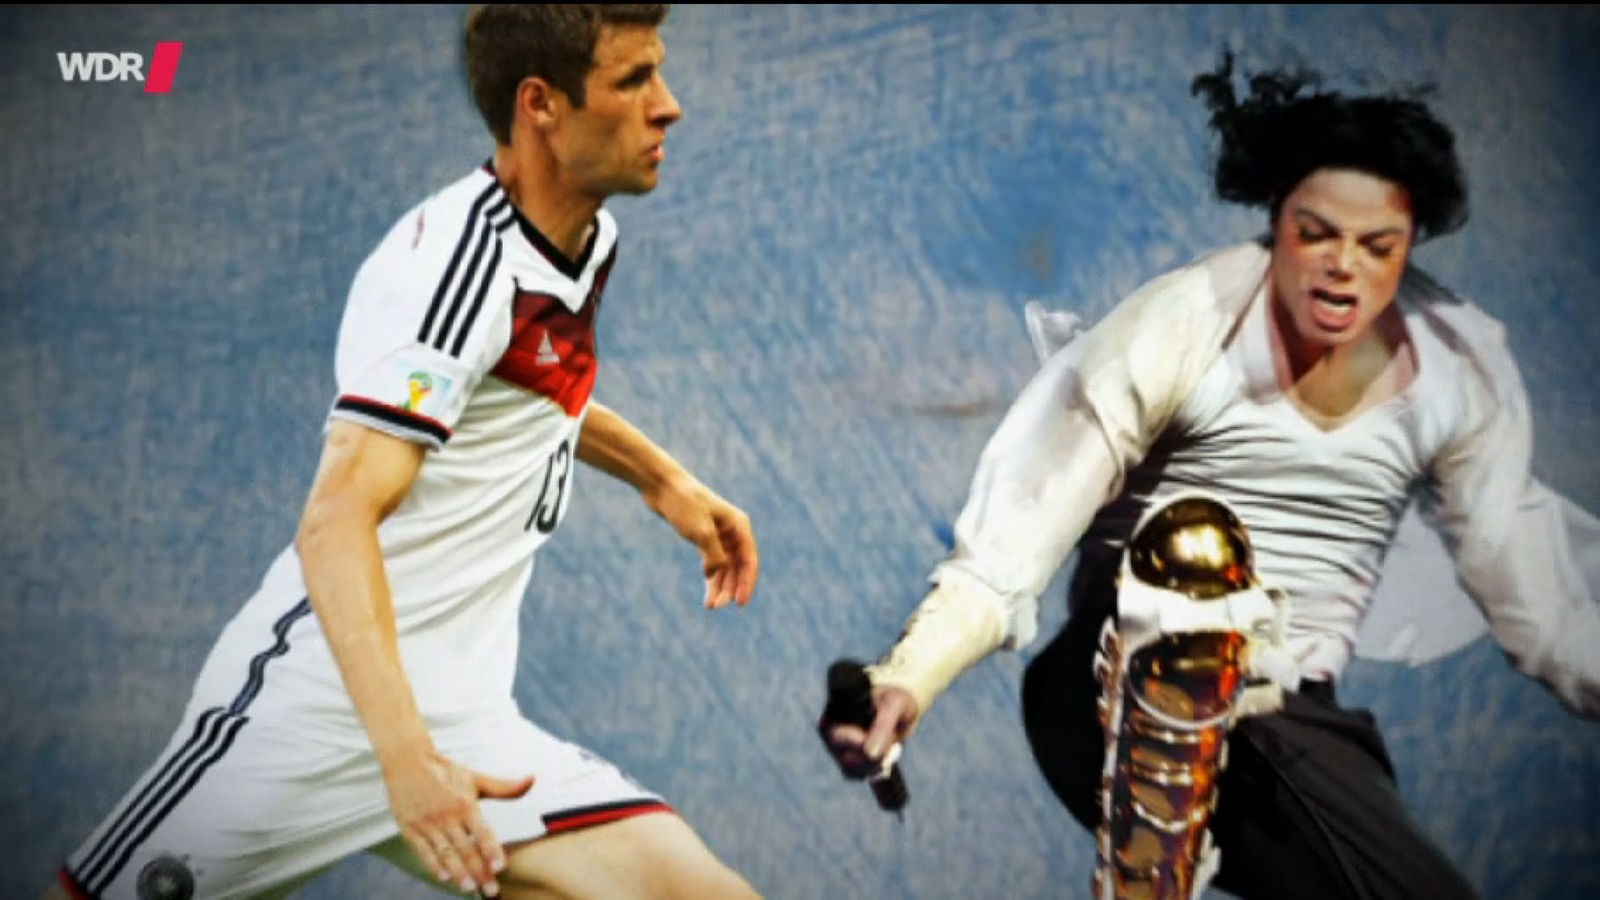 Vorbilder und Idole. Abgebildet sind Thomas Müller (Fußballer) und Michael Jackson (Musiker).